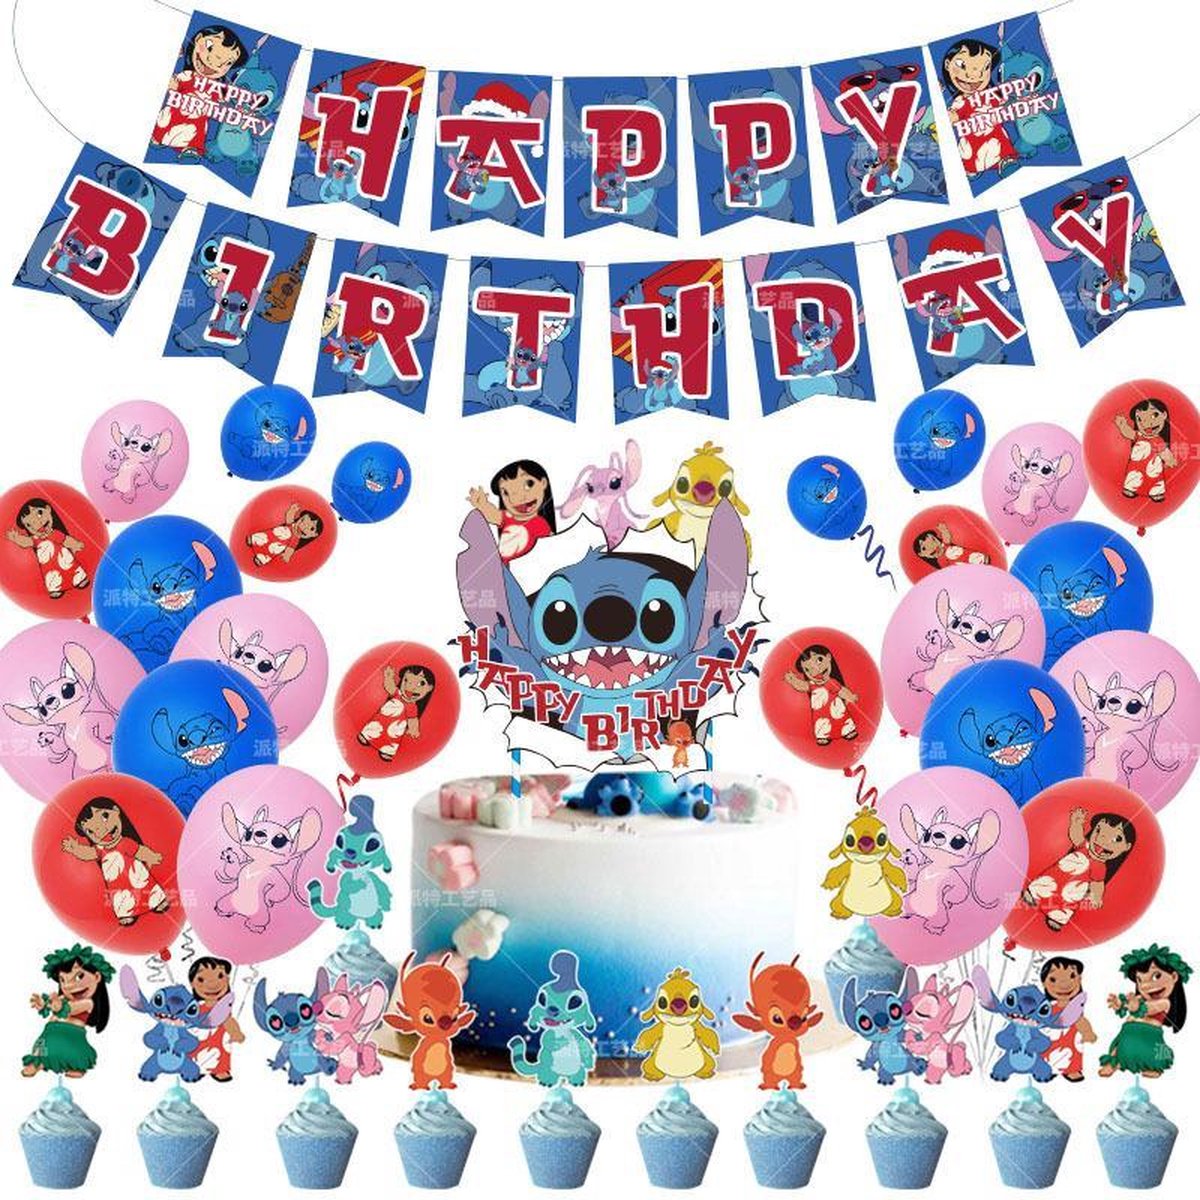 Décoration de fête d'anniversaire Disney Lilo Stitch, vaisselle 1